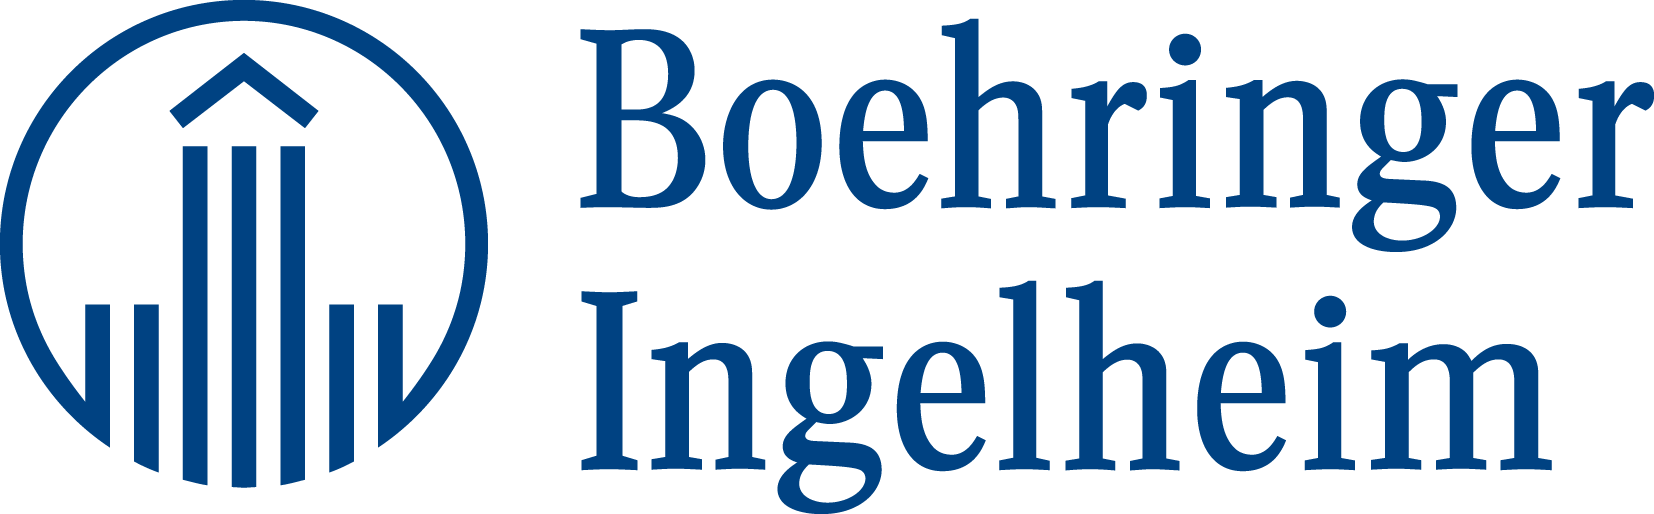 Sponsor Boehringer Ingelheim Logo